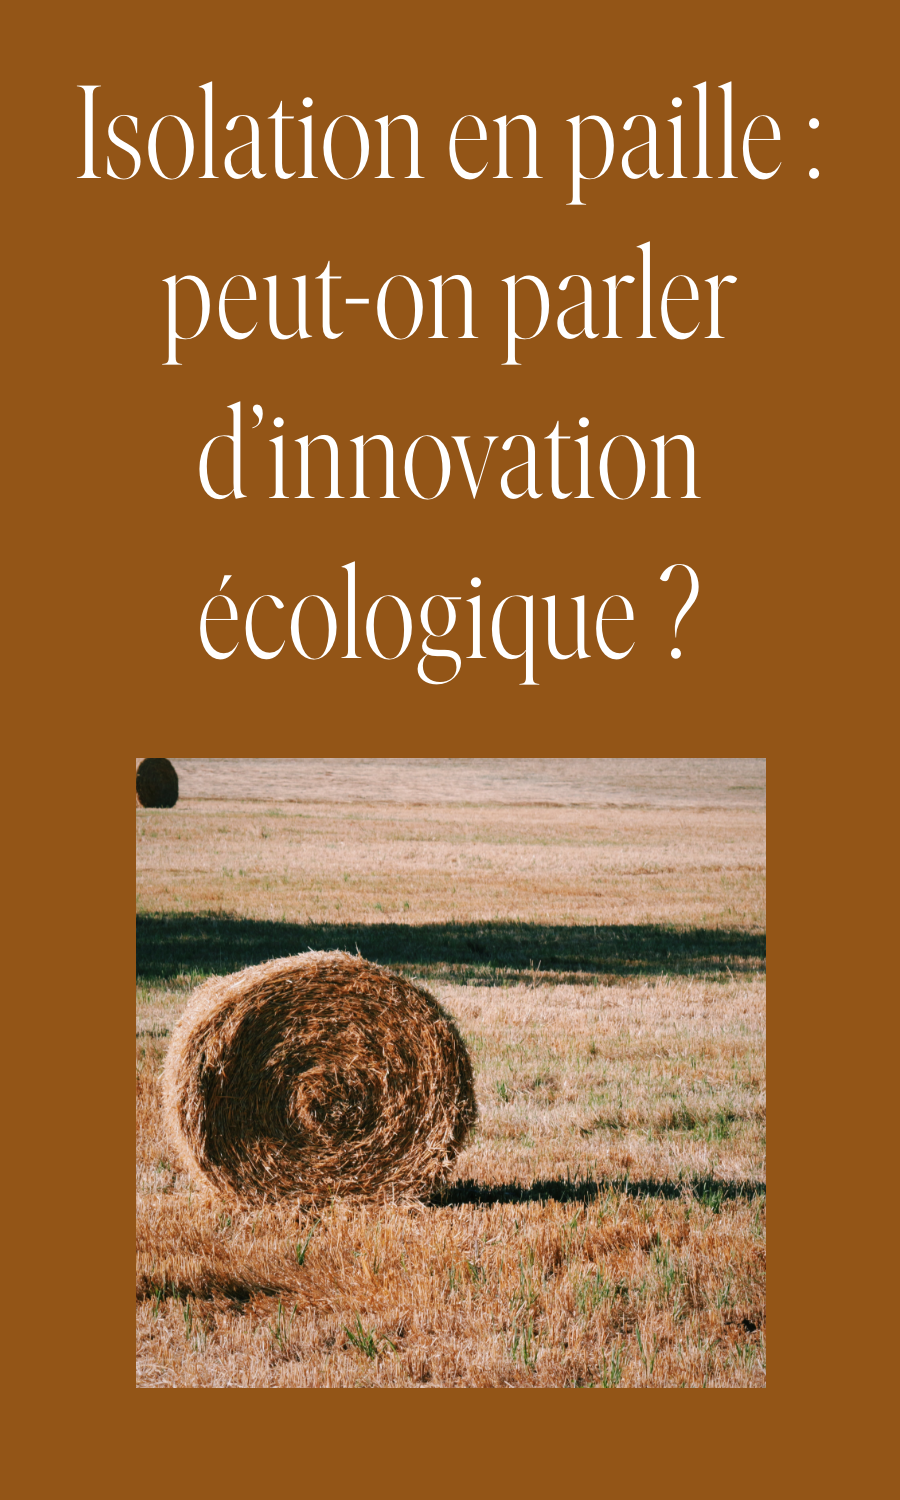 Isolation en paille: peut-on parler d’innovation écologique?